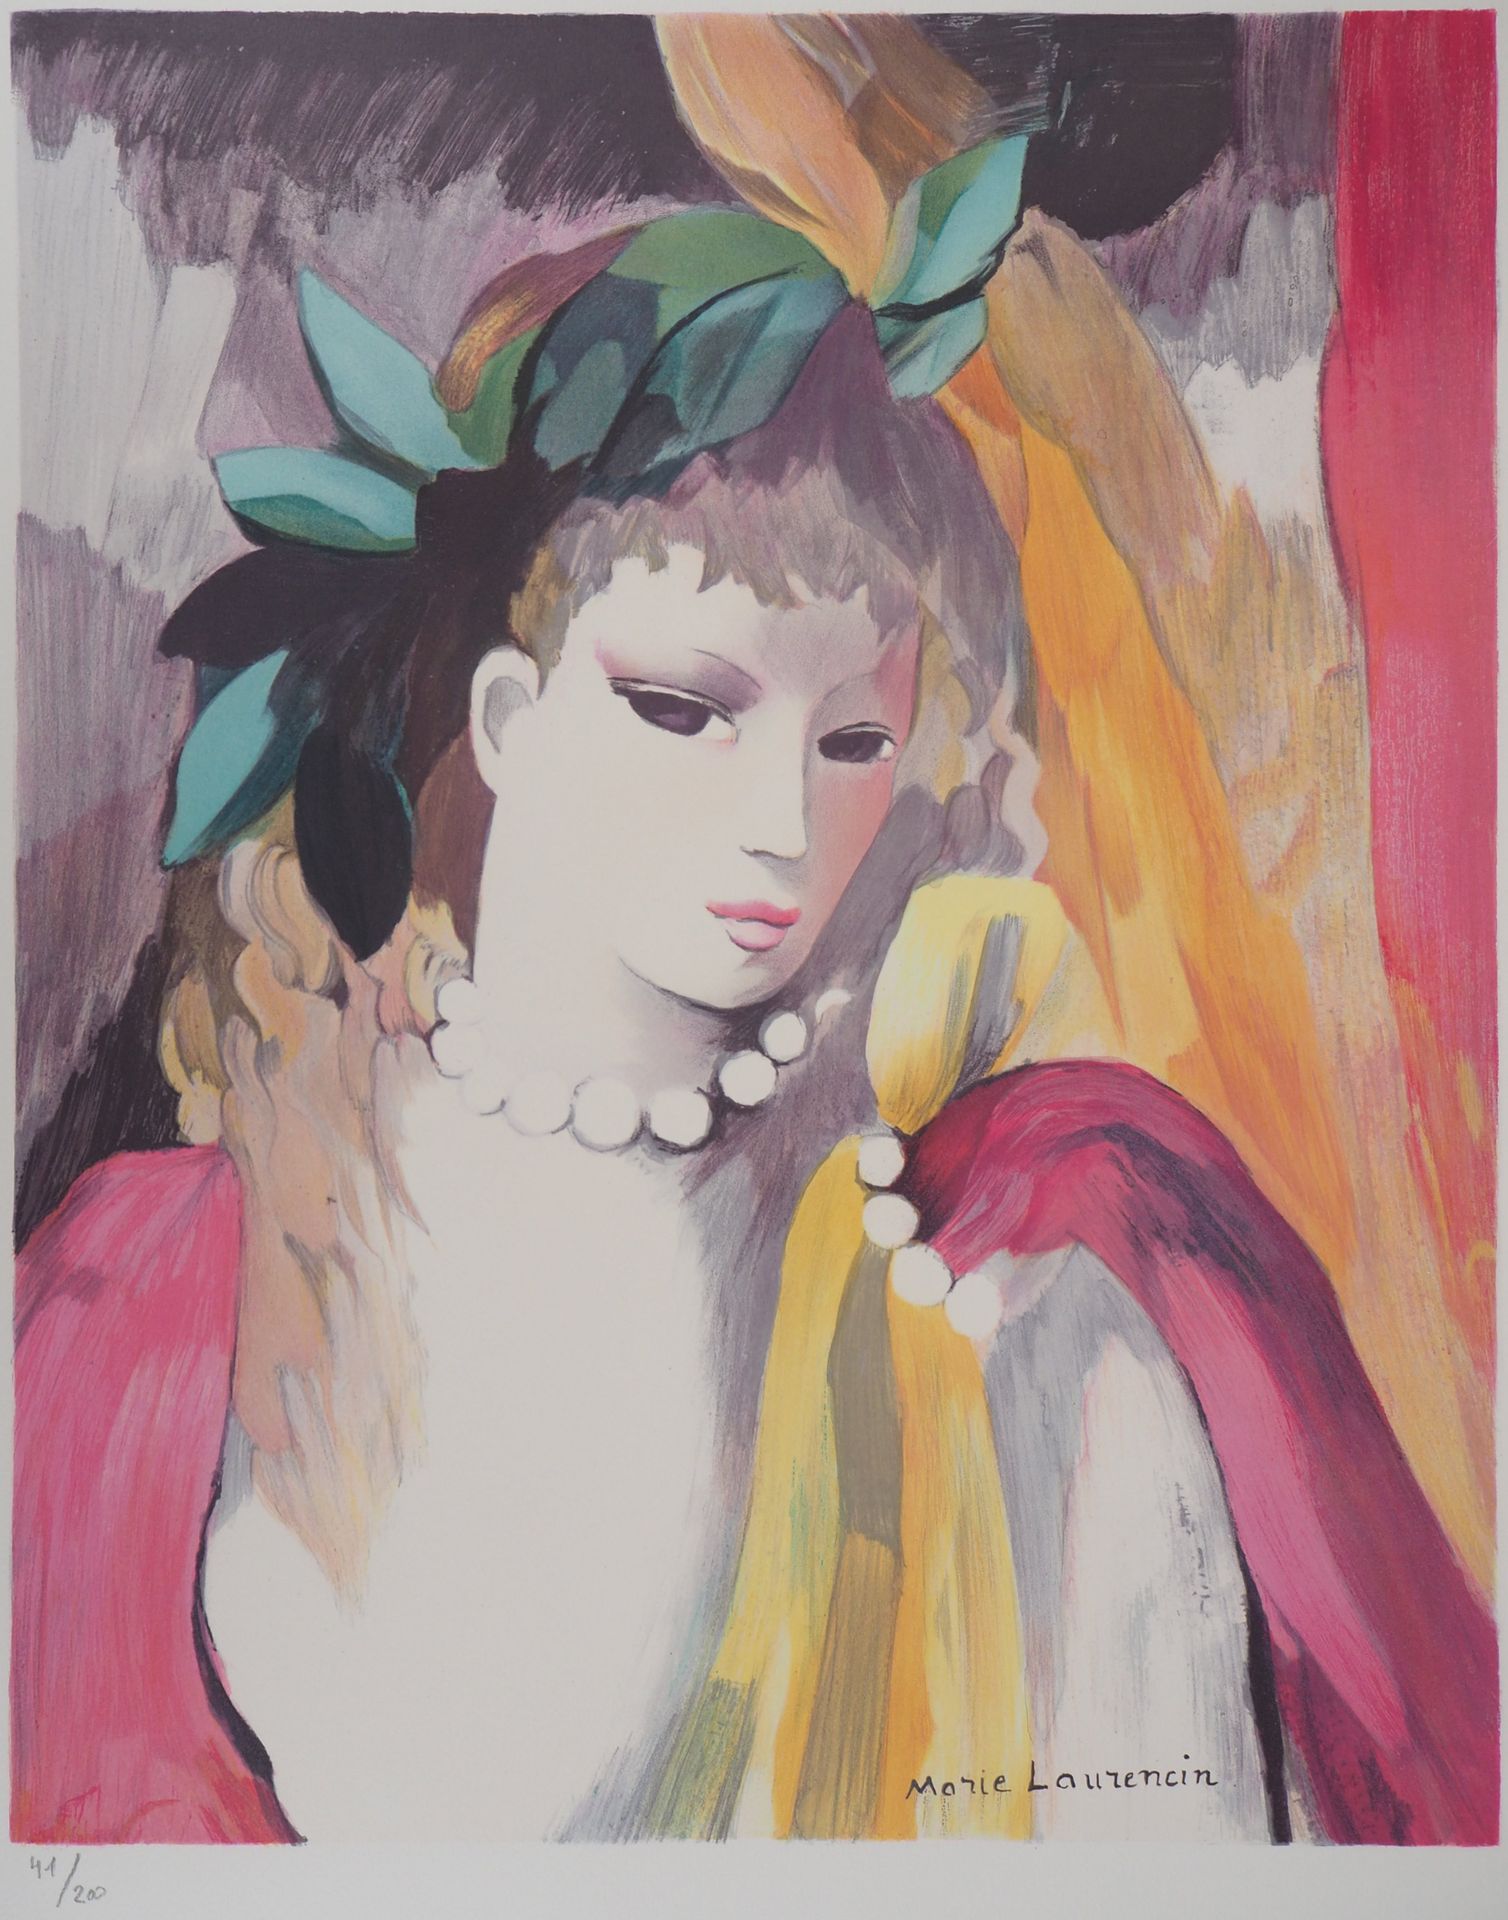 MARIE LAURENCIN 玛丽-劳伦琴 (1883-1956)

珍珠项链

彩色原版石版画，阿克塞斯羊皮纸。

板块中的签名

编号为/200份

75&hellip;